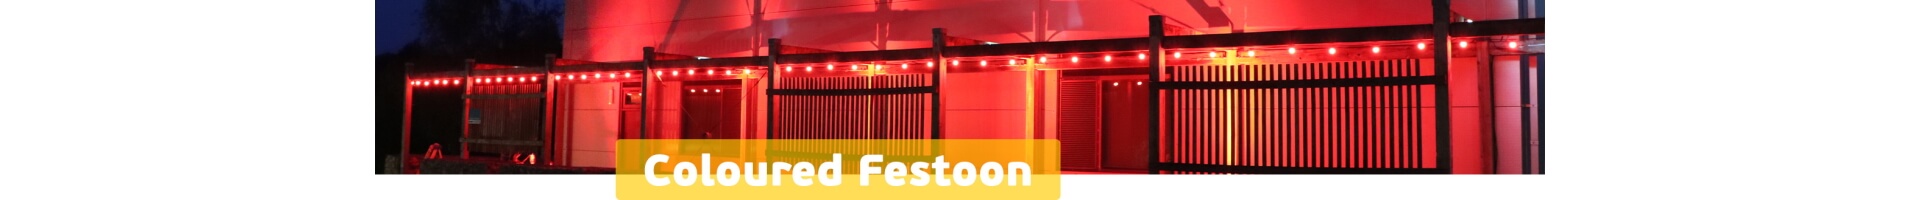 Coloured Festoon